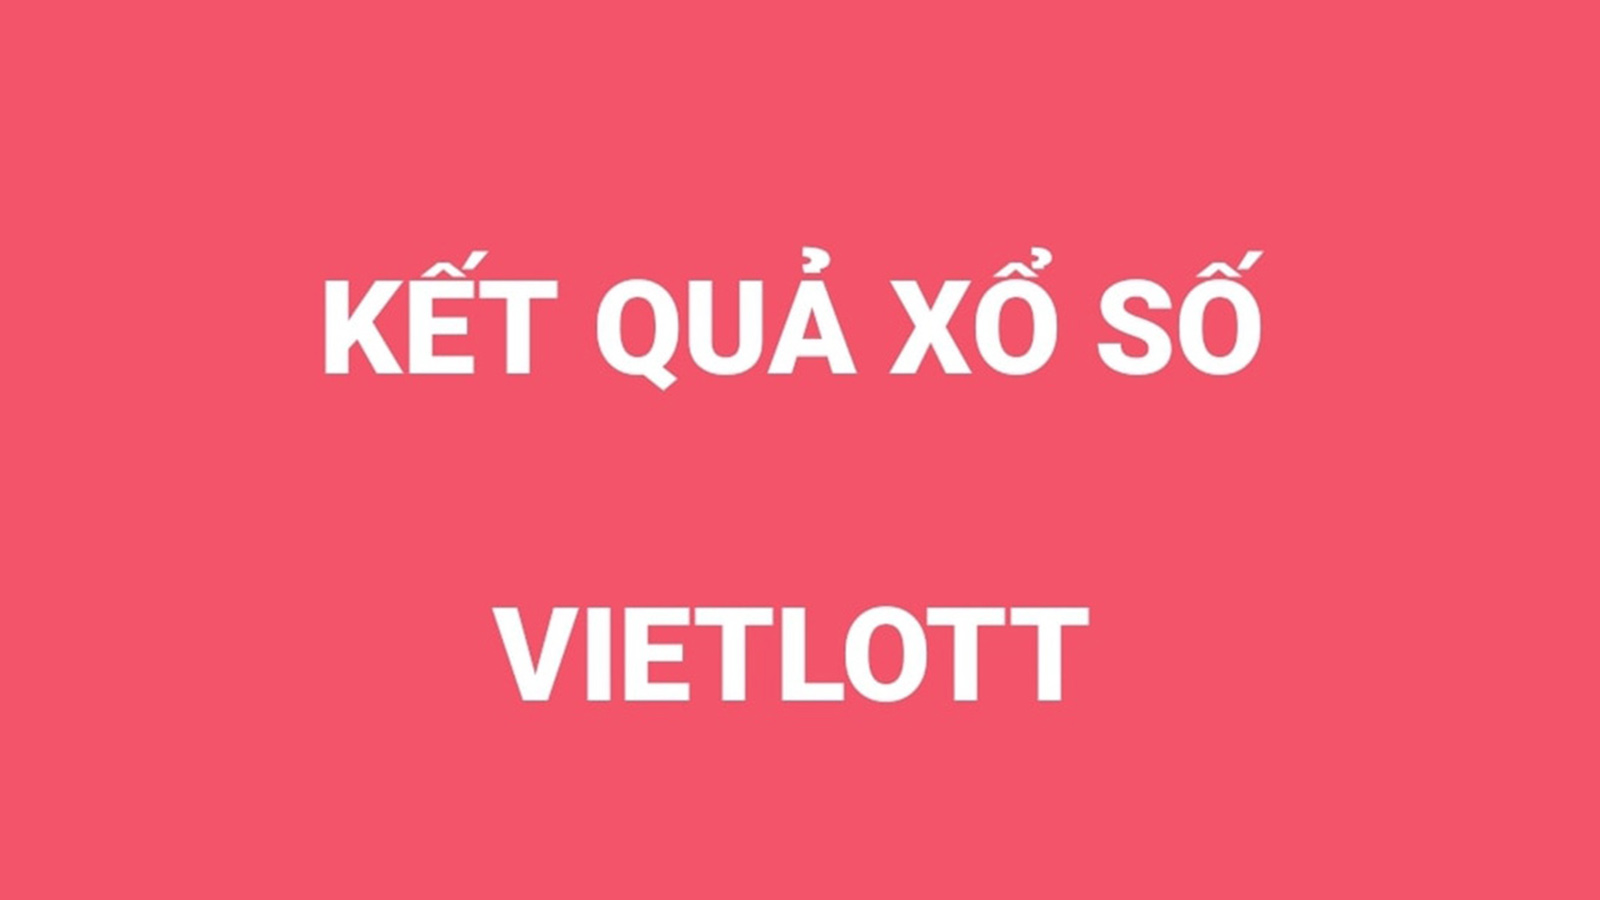 Vietlott 6/45: Kết quả xổ số KQXS Vietlott Mega 6 45 hôm nay 14/8/2020. Vietlott 14/8. Xổ số Vietlott ngày 14 tháng 8. Vietlott 6/45 hôm nay. Ket qua Vietlott.